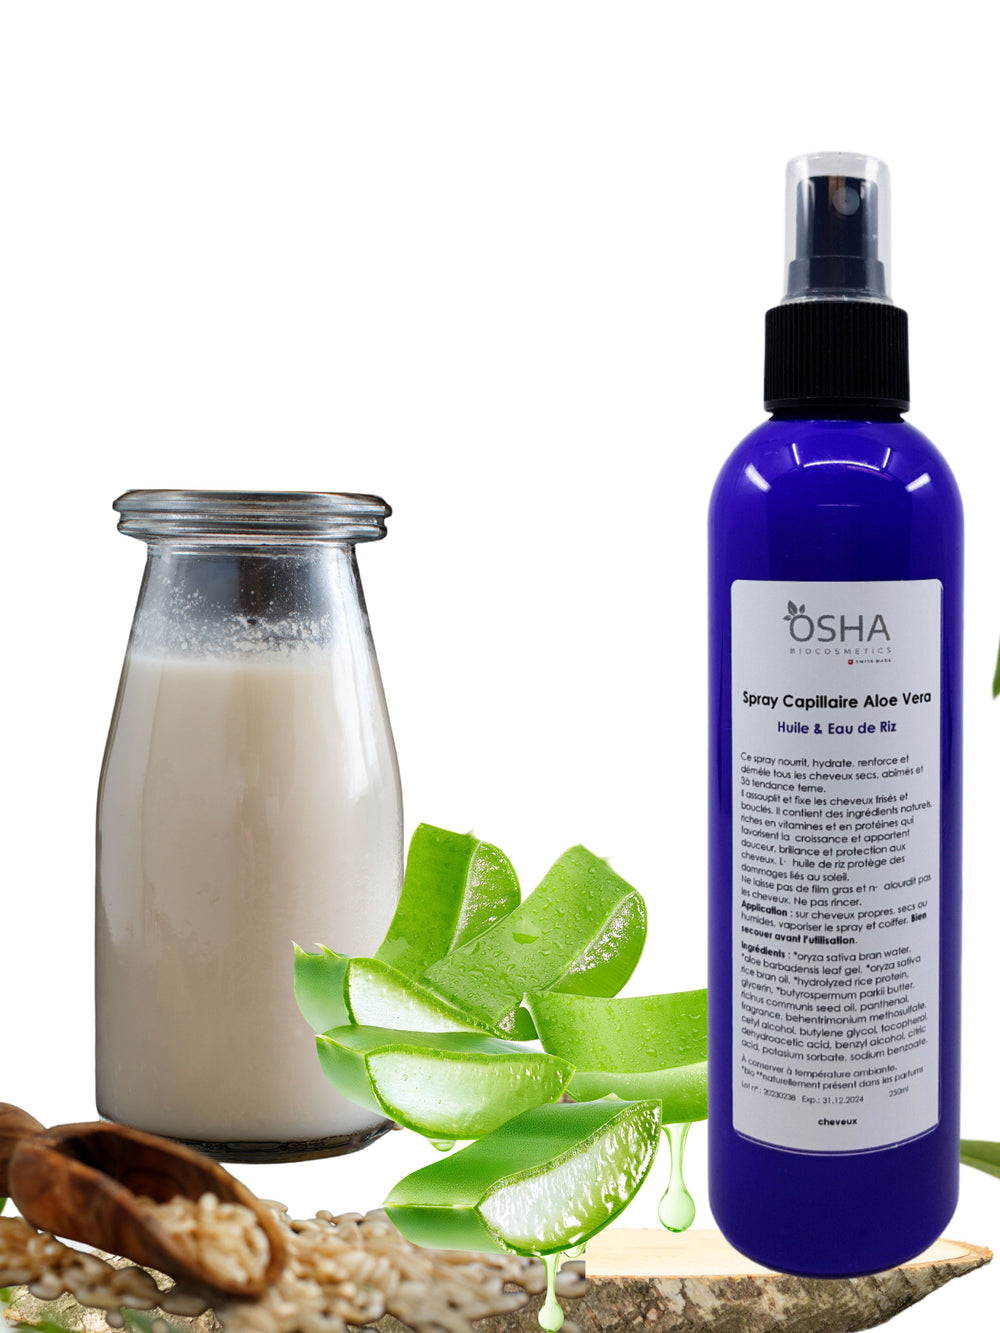 Spray Capillaire Aloe Vera Huile & Eau de Riz - OSHA Biocosmetics